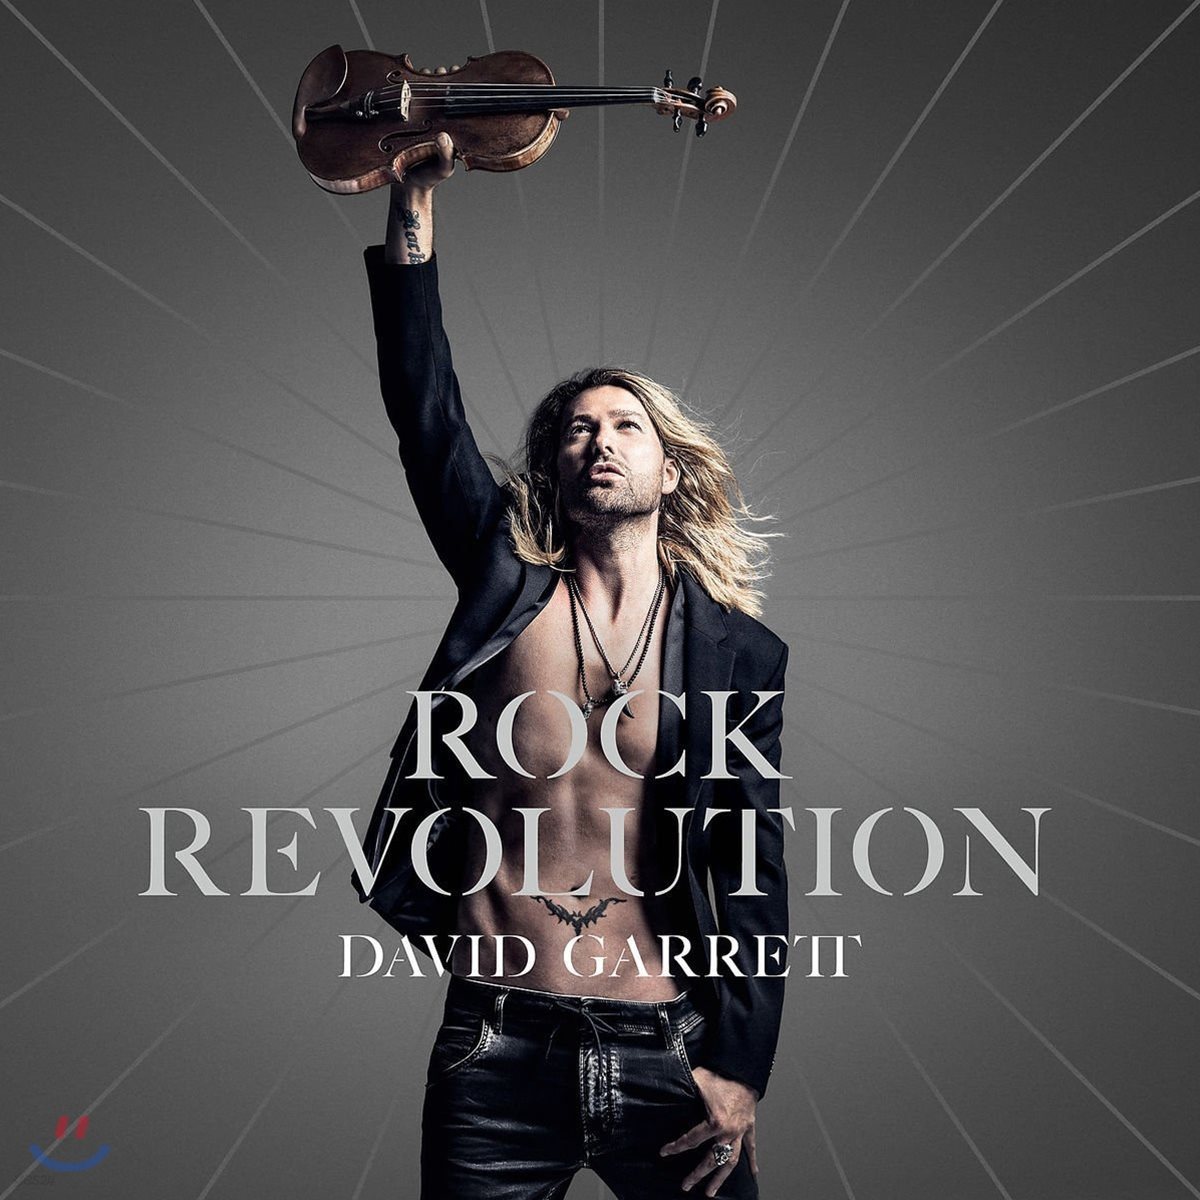 David Garrett 데이빗 가렛 록 레볼루션 (Rock Revolution)